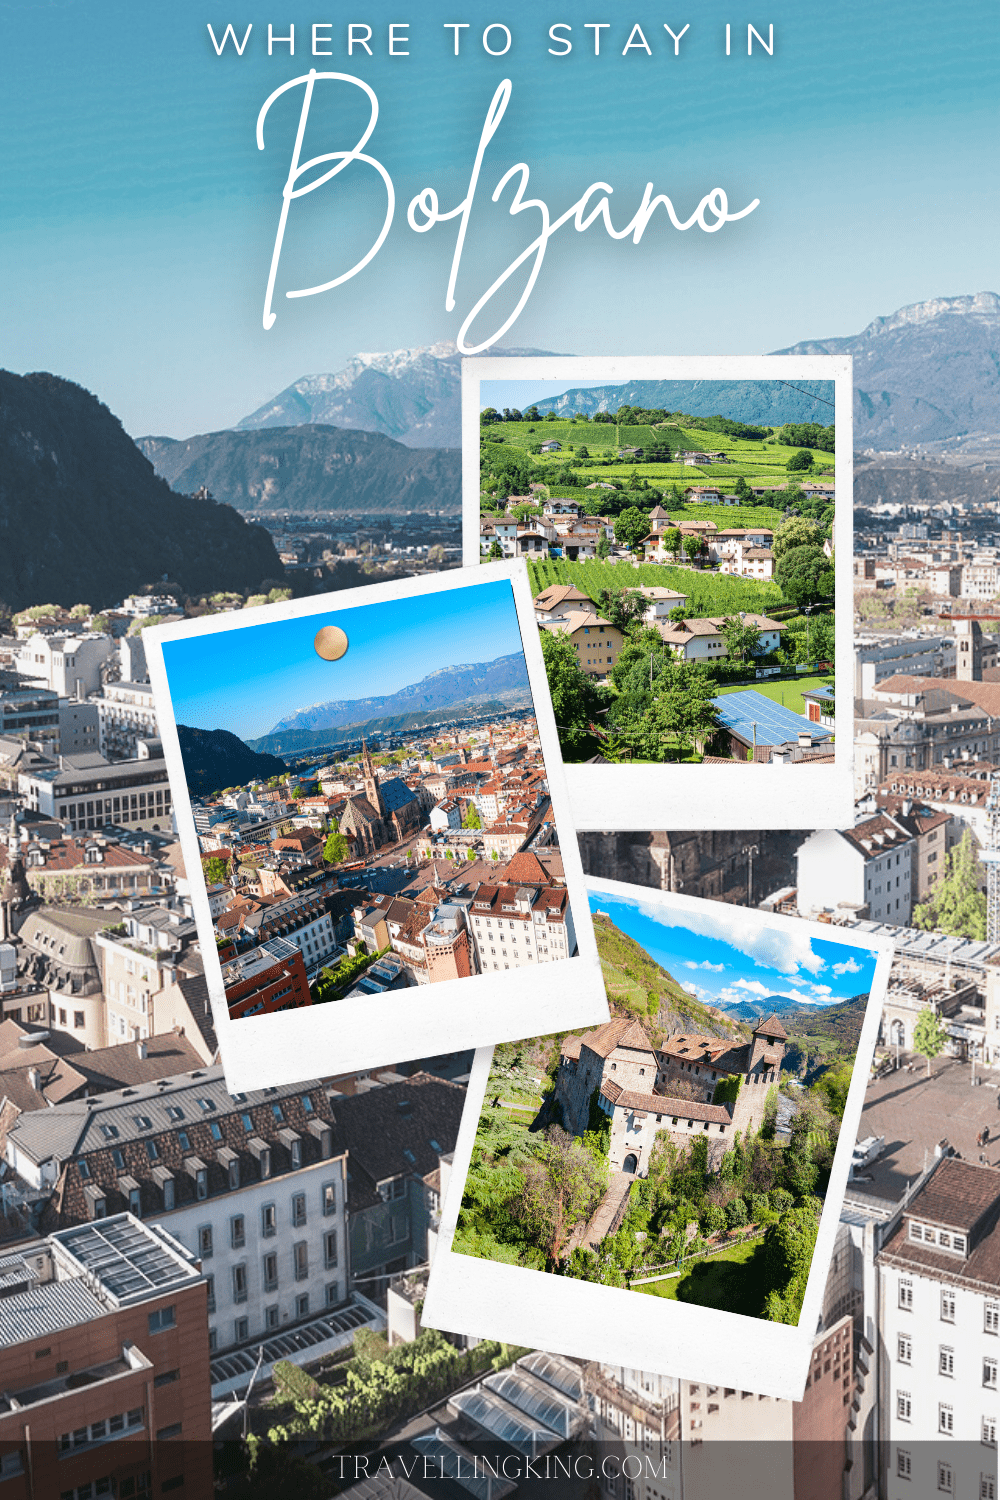 Where to stay in Bolzano